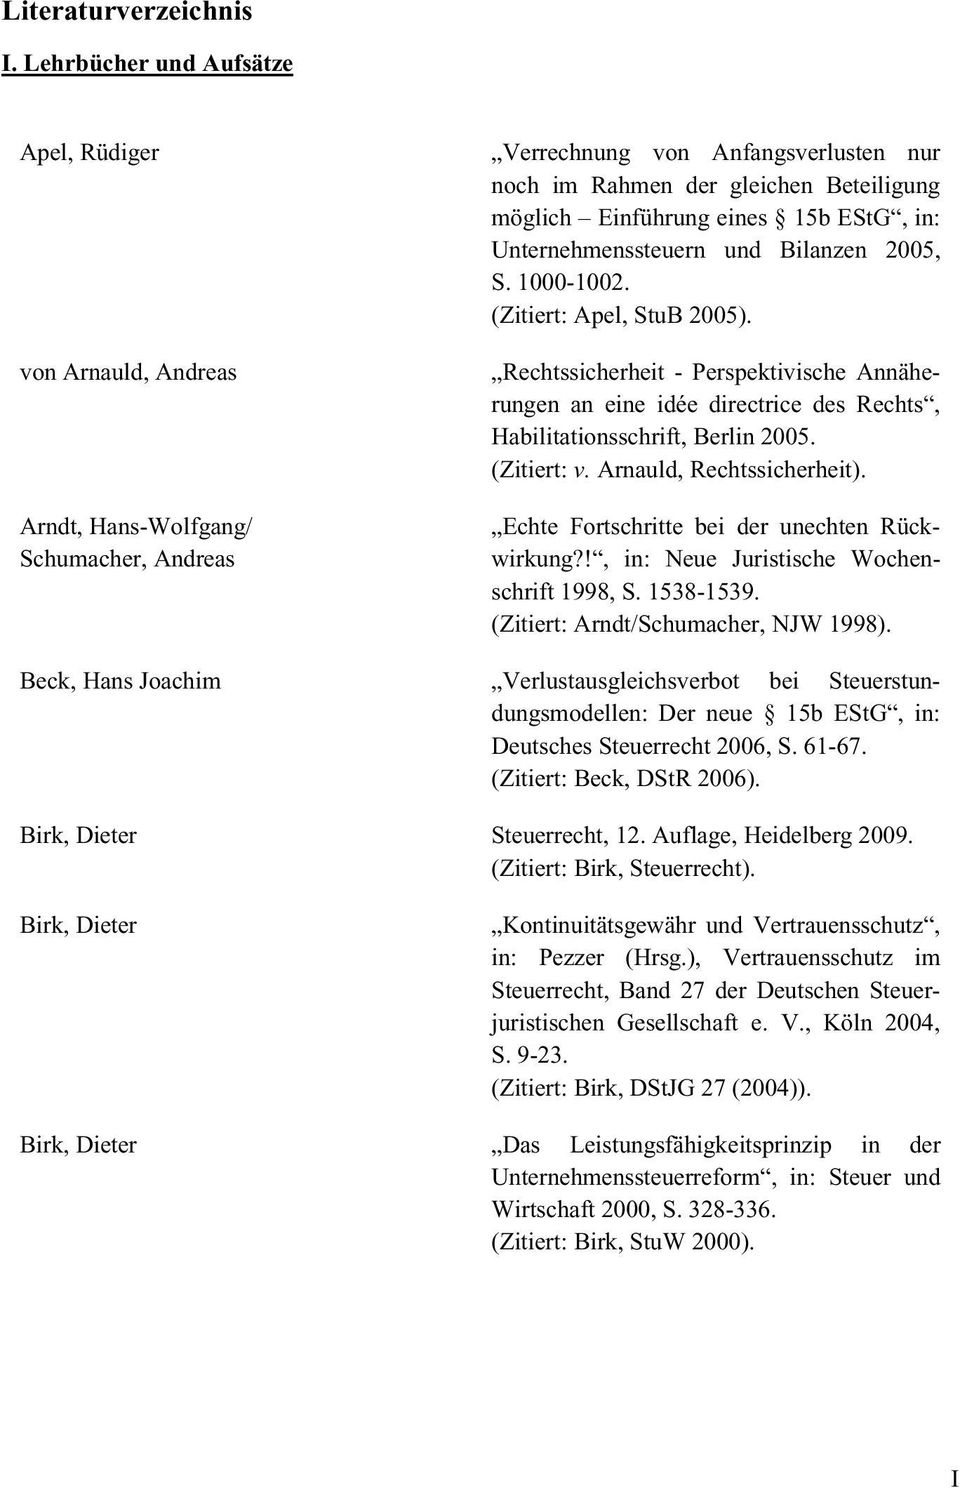 eines 15b EStG, in: Unternehmenssteuern und Bilanzen 2005, S. 1000-1002. (Zitiert: Apel, StuB 2005).